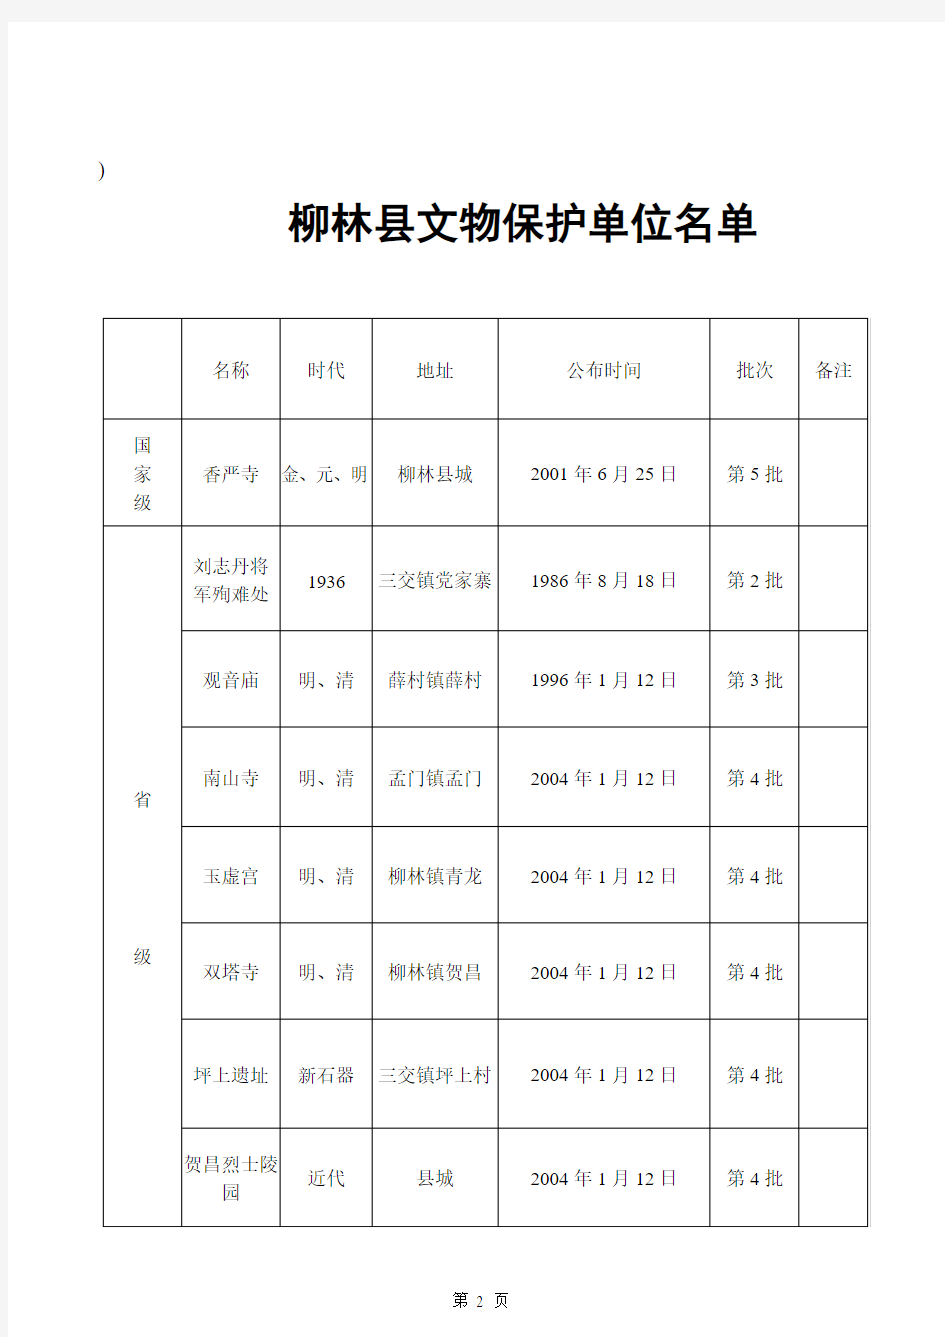 柳林县文物保护单位名单